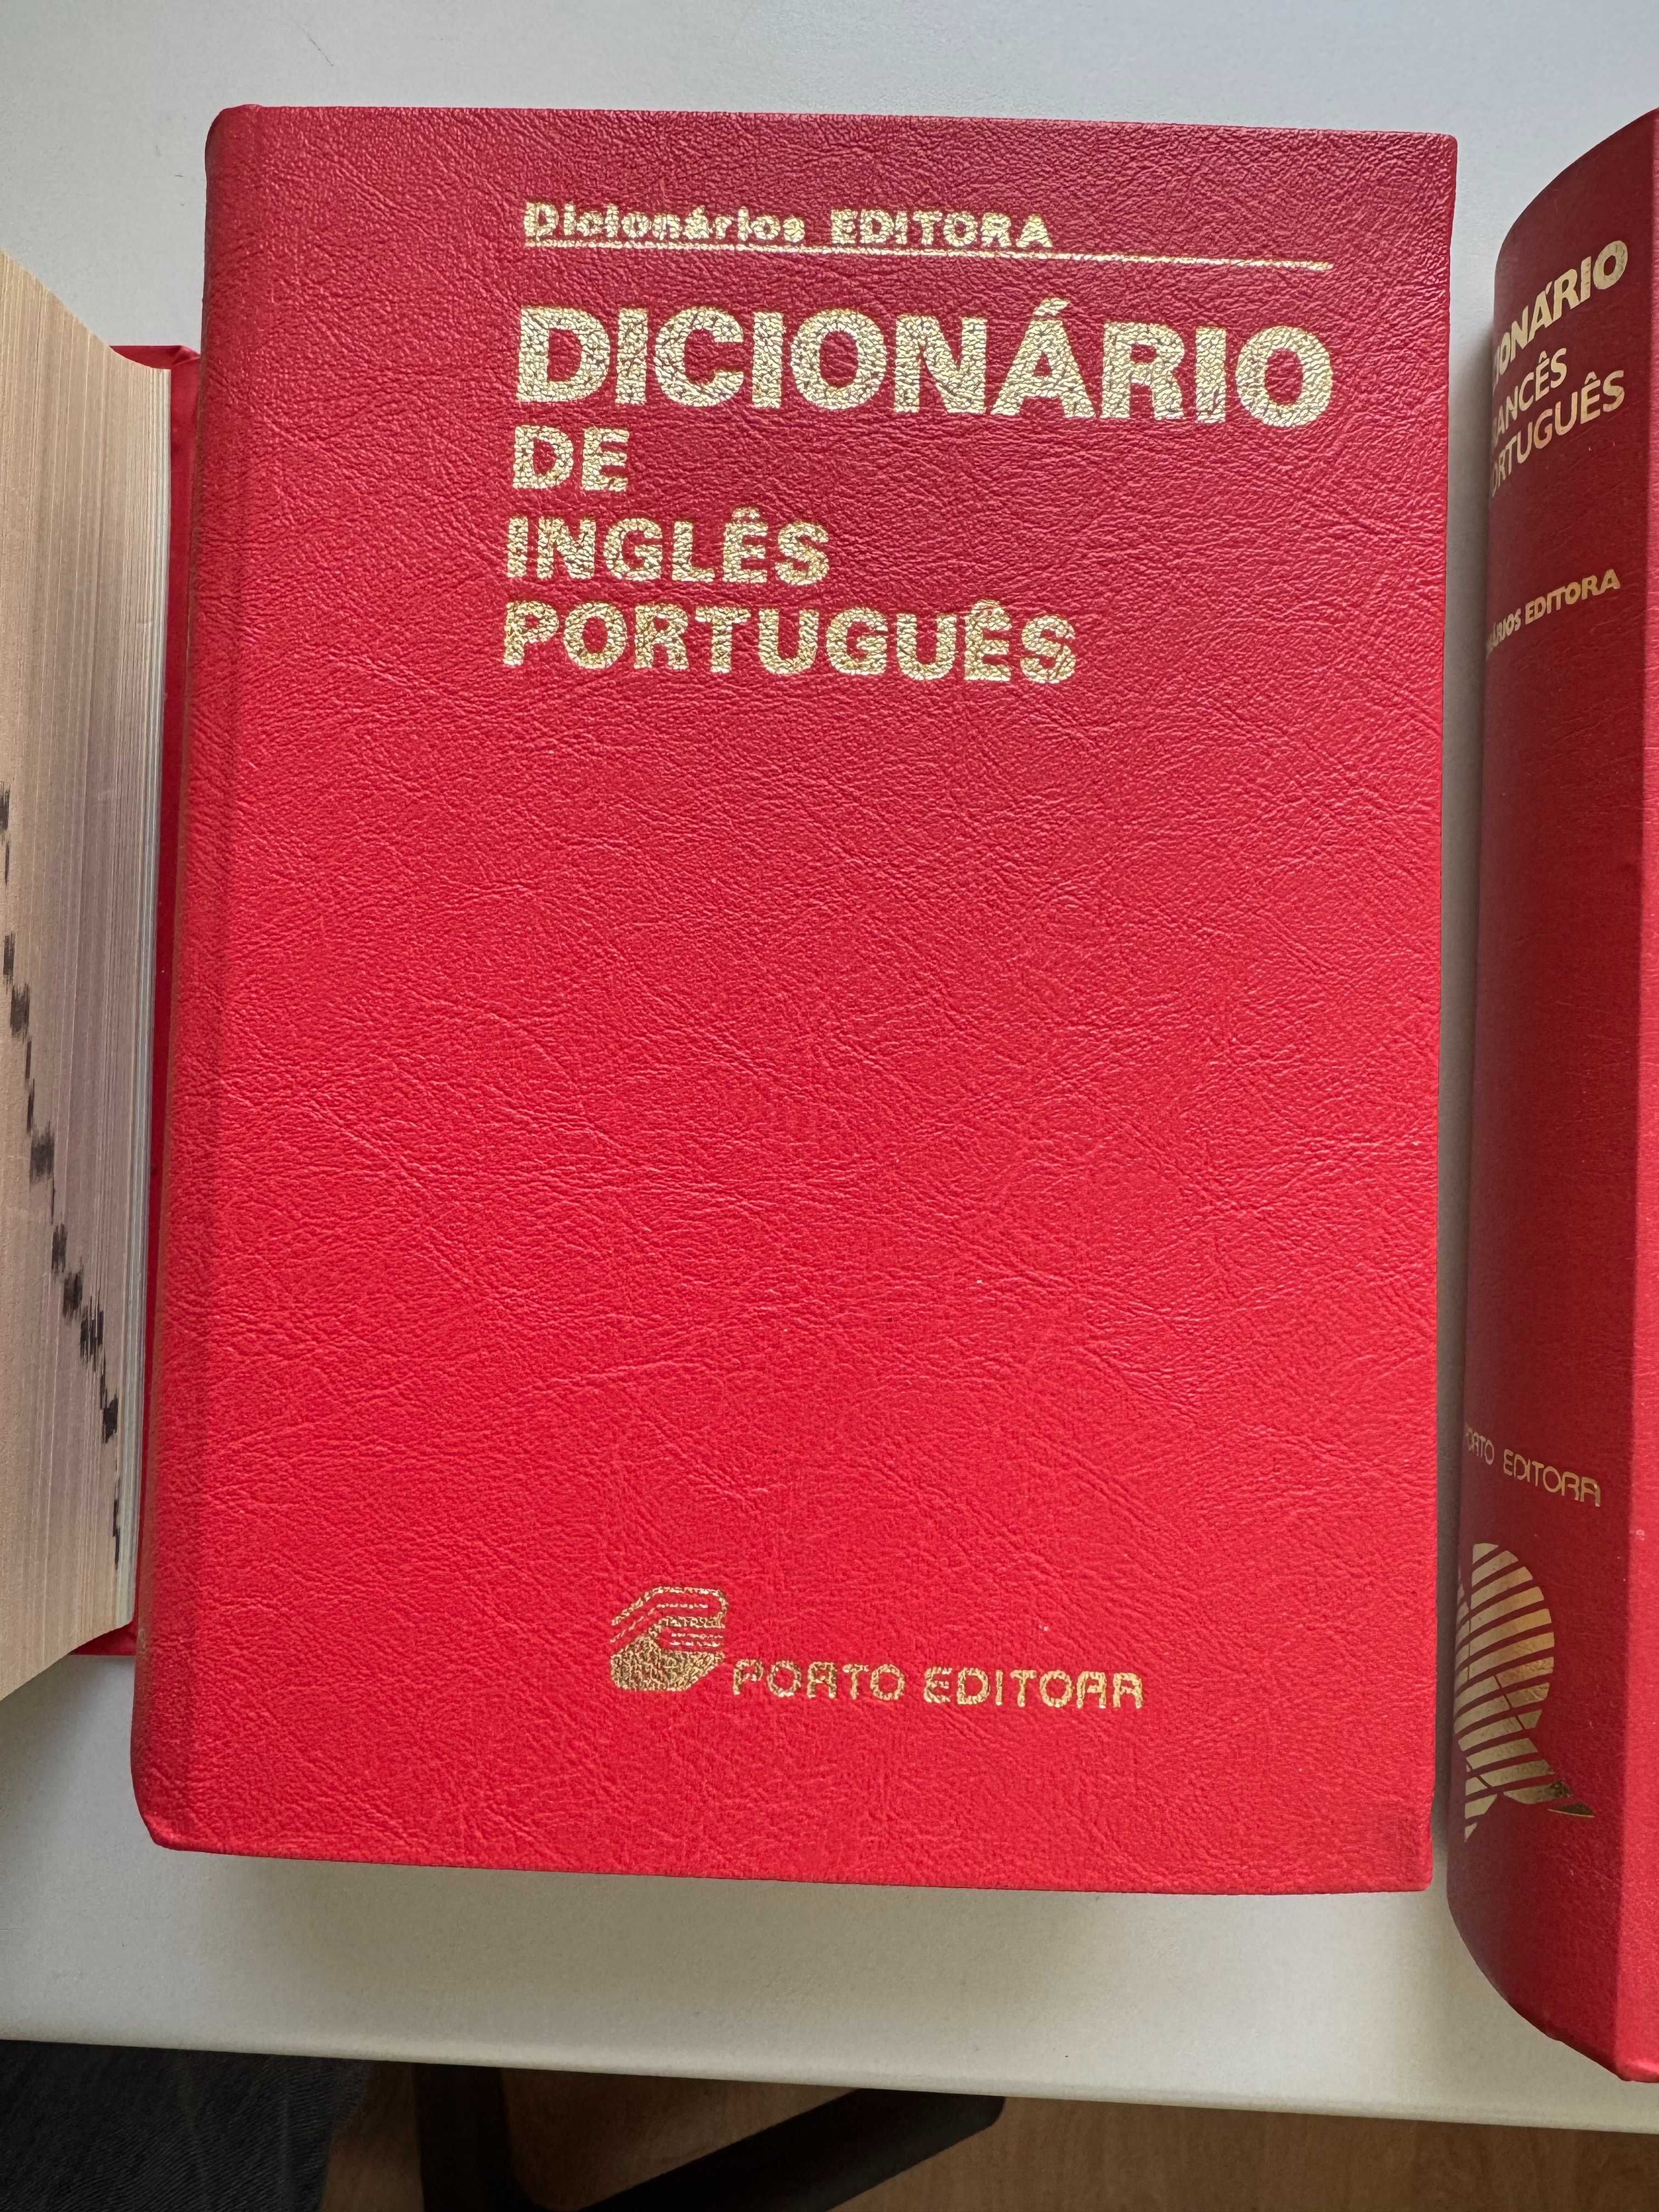 Dicionários Editora, vendo os 3